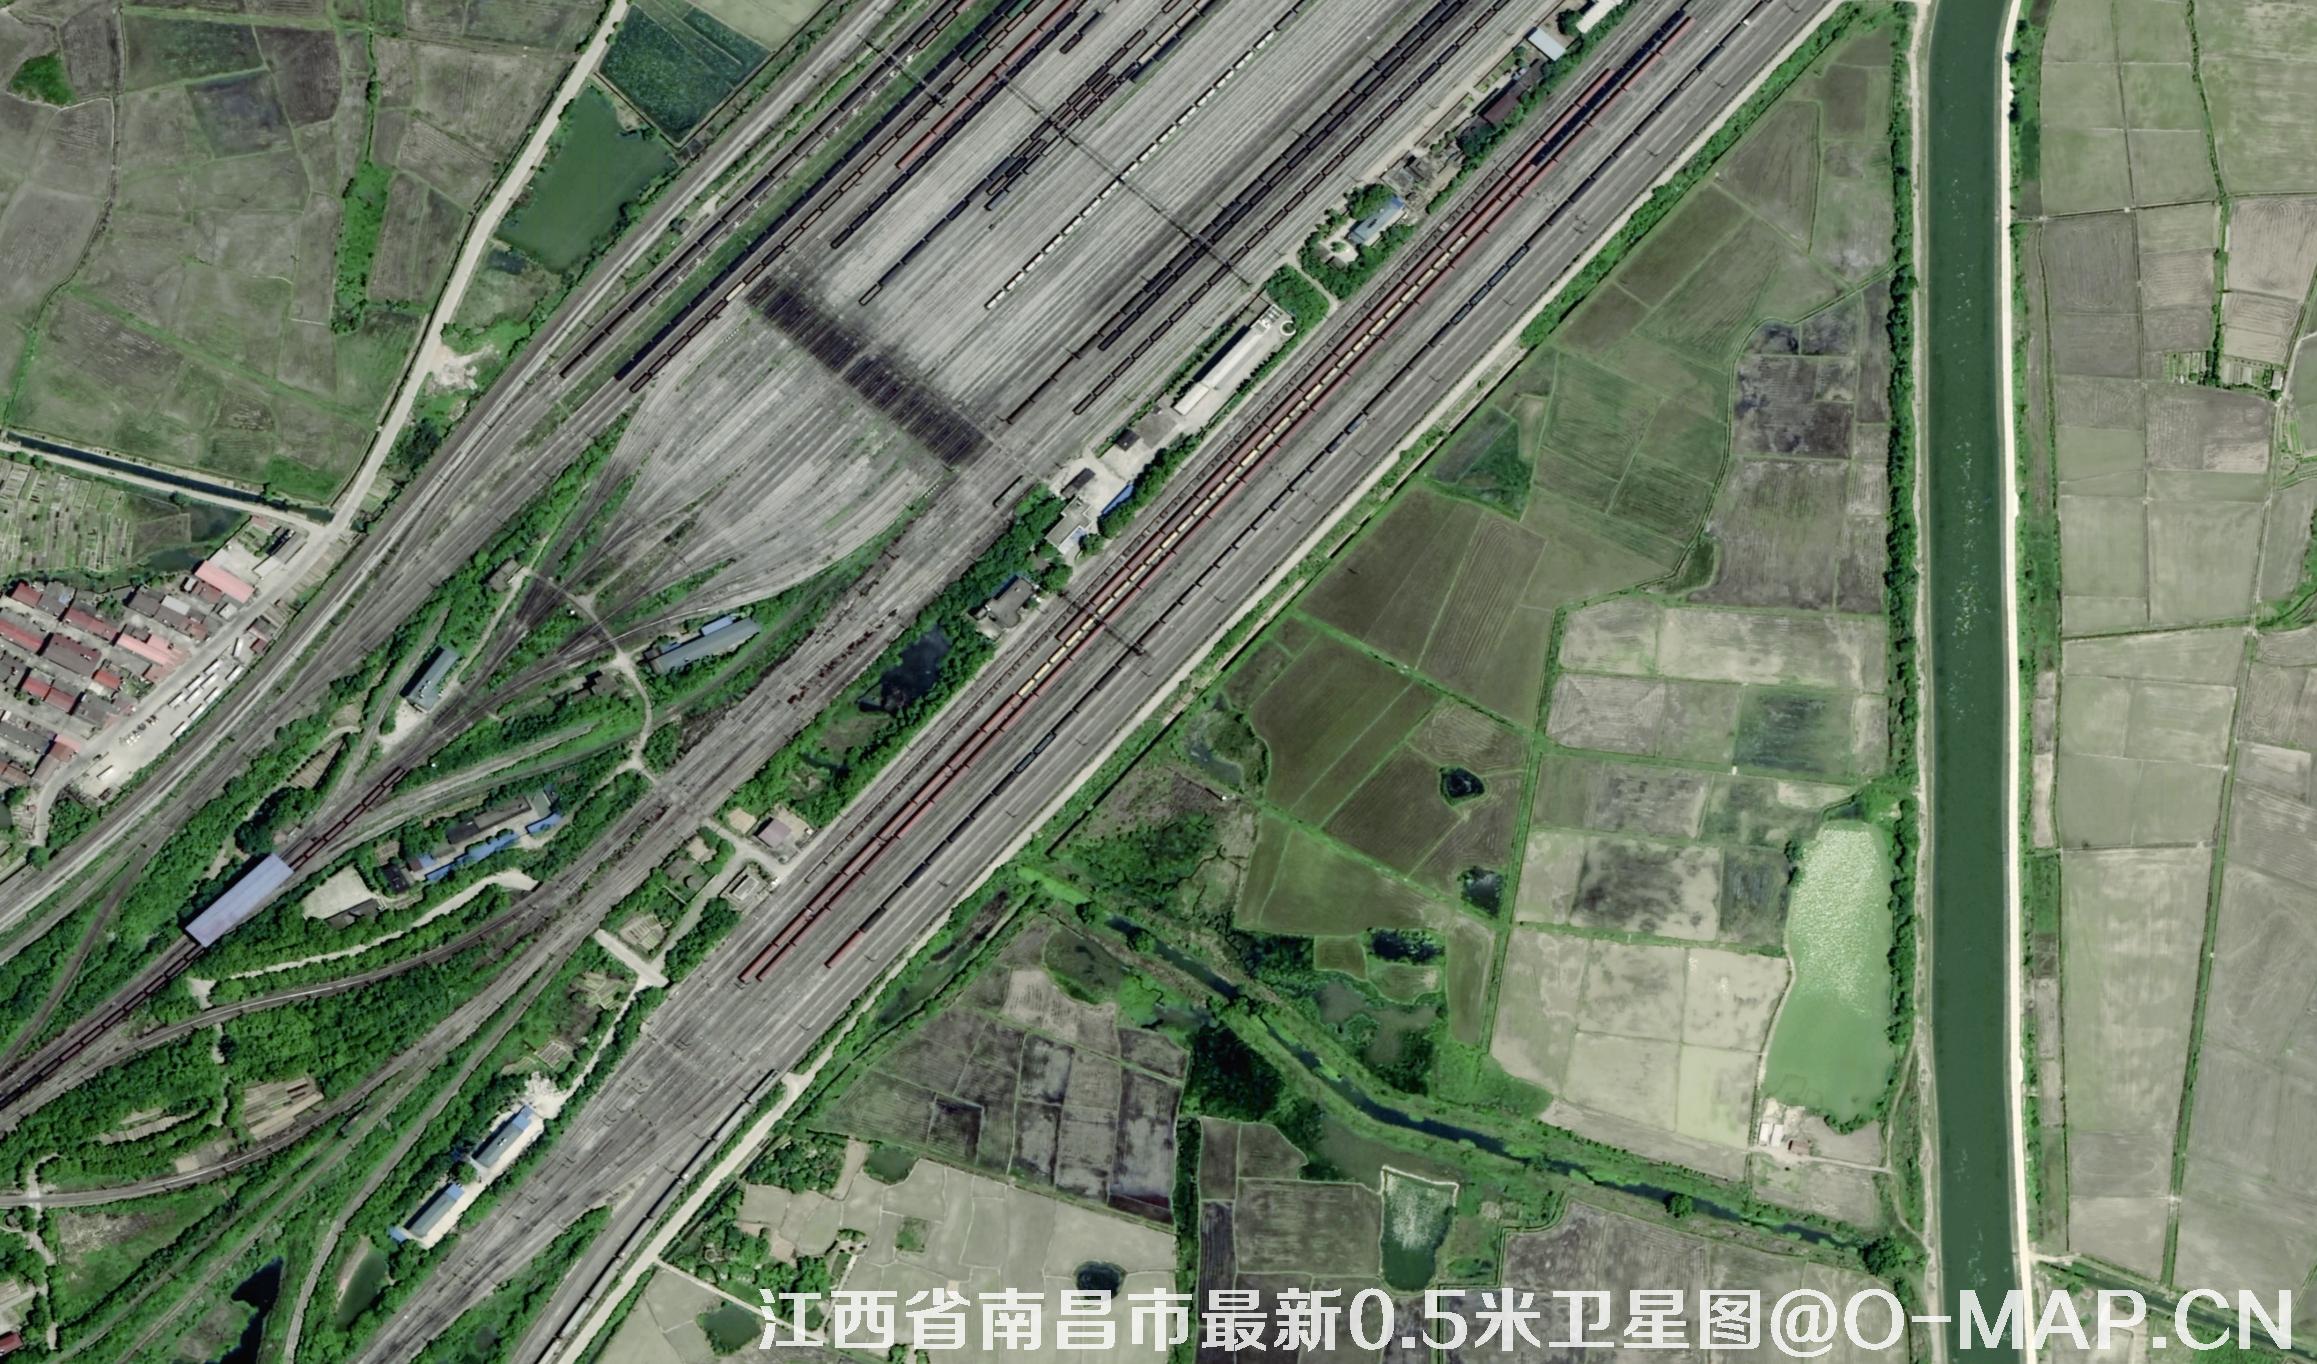 0.5米遥感卫星拍摄的江西省南昌市